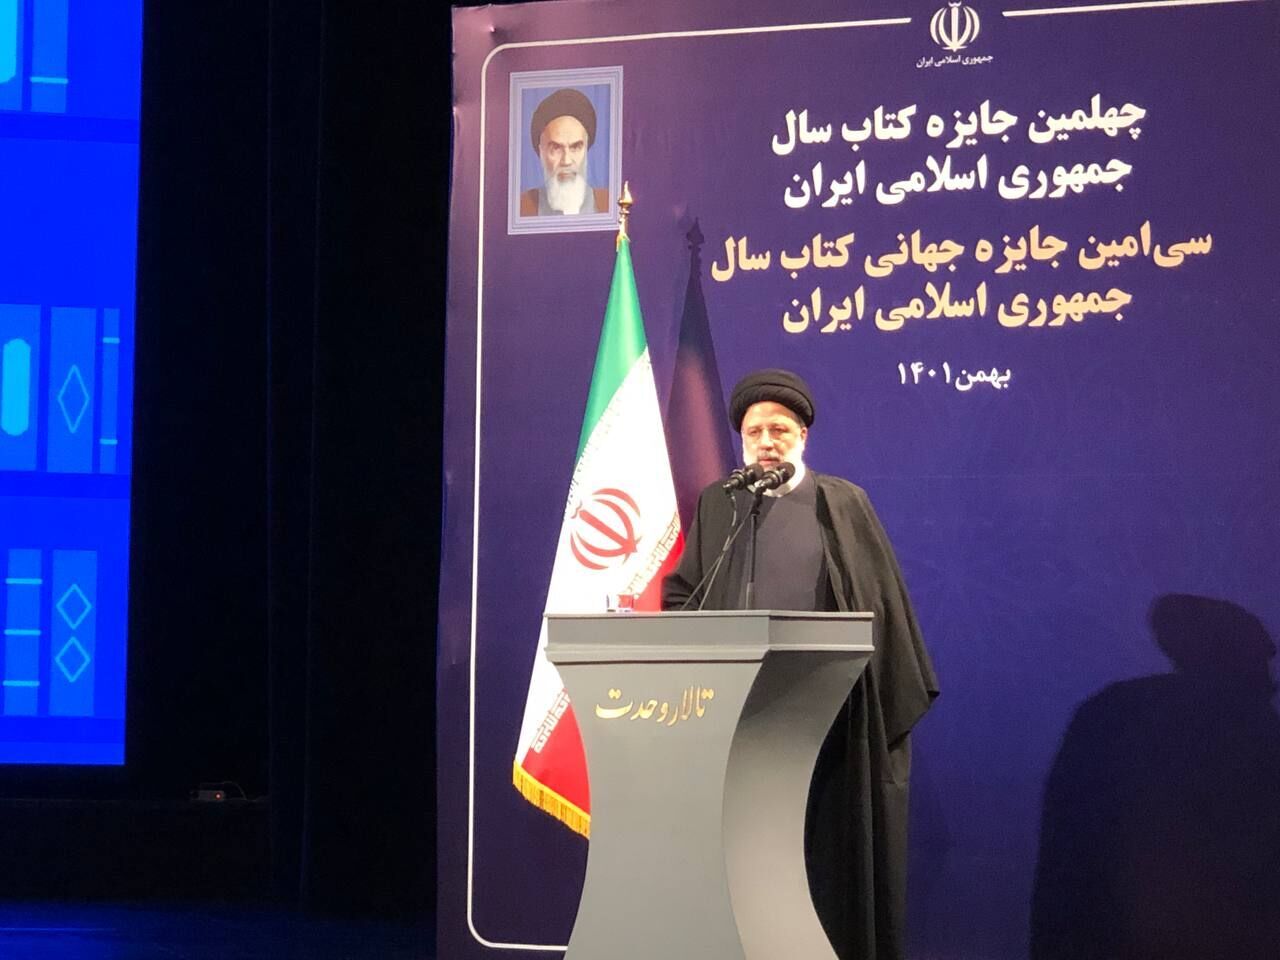 رئيسي: من واجب المفكرين والنخب حماية الثقافة والحضارة الإيرانية الإسلامية الثرية